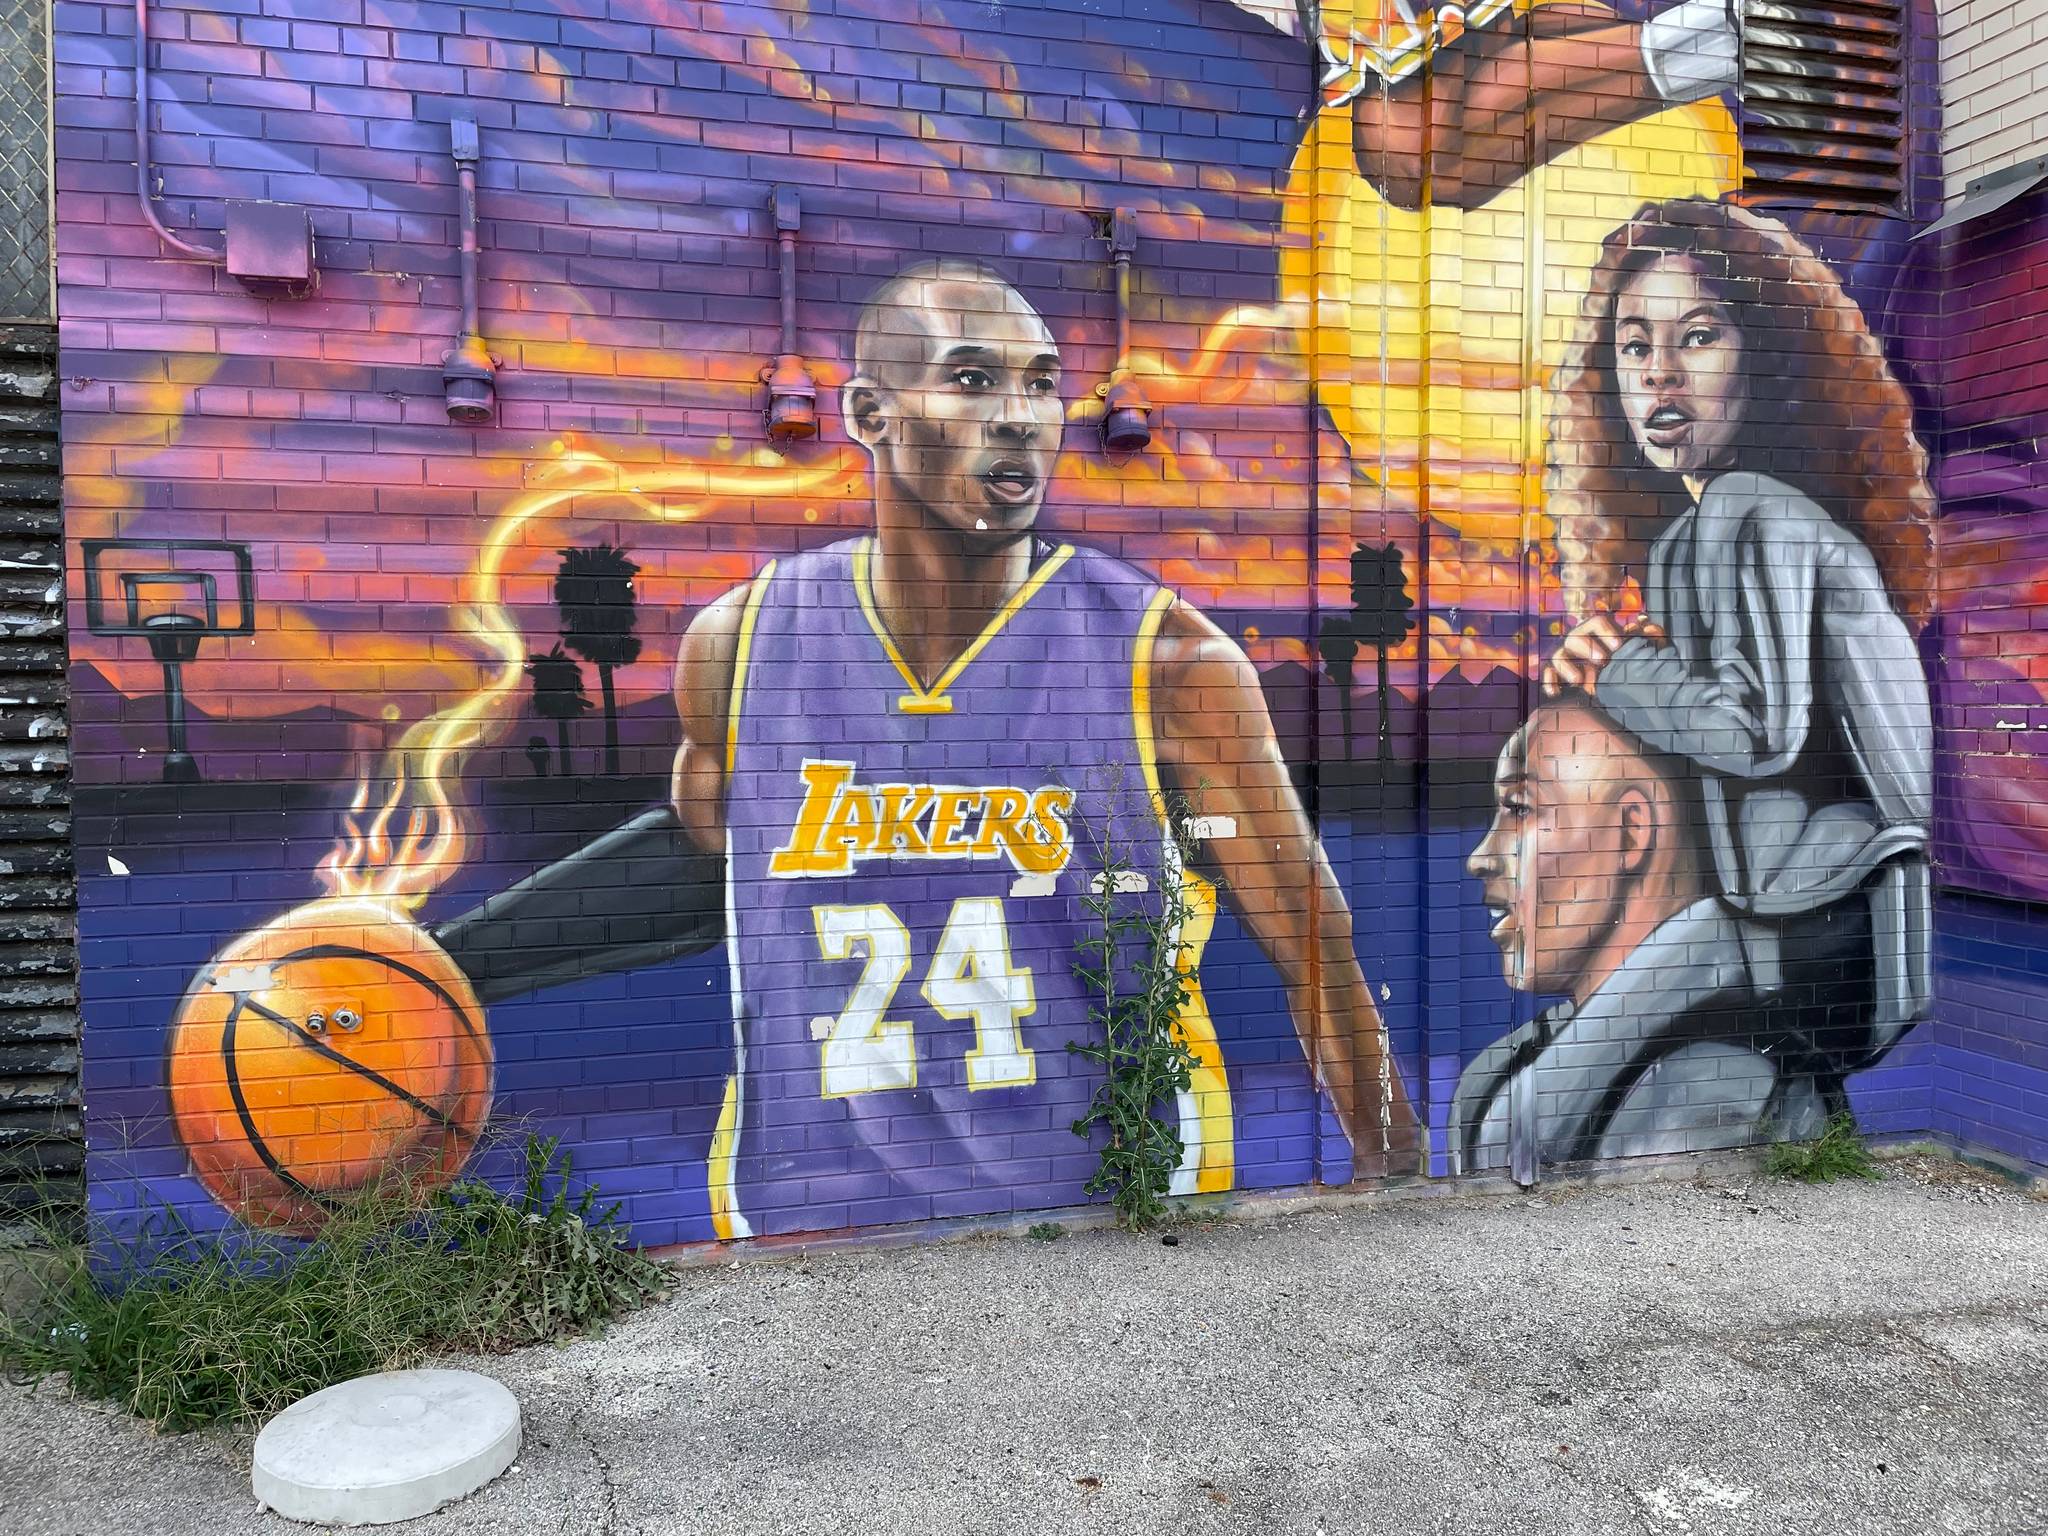 rahmaanstatik&mdash;Kobe Bryant and Gianna Bryant tribute mural